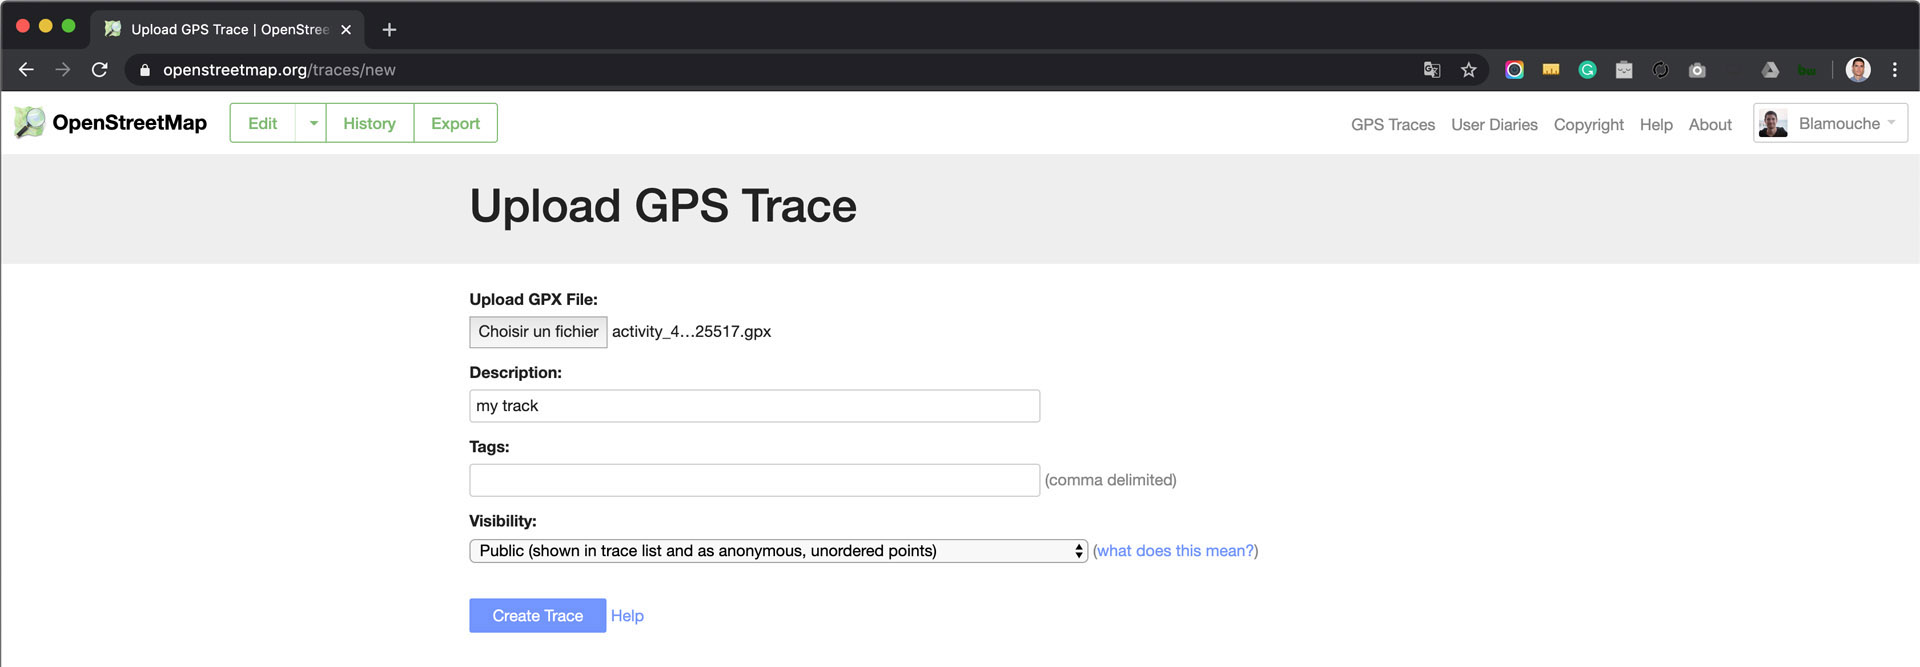 Uploading a GPS Trace